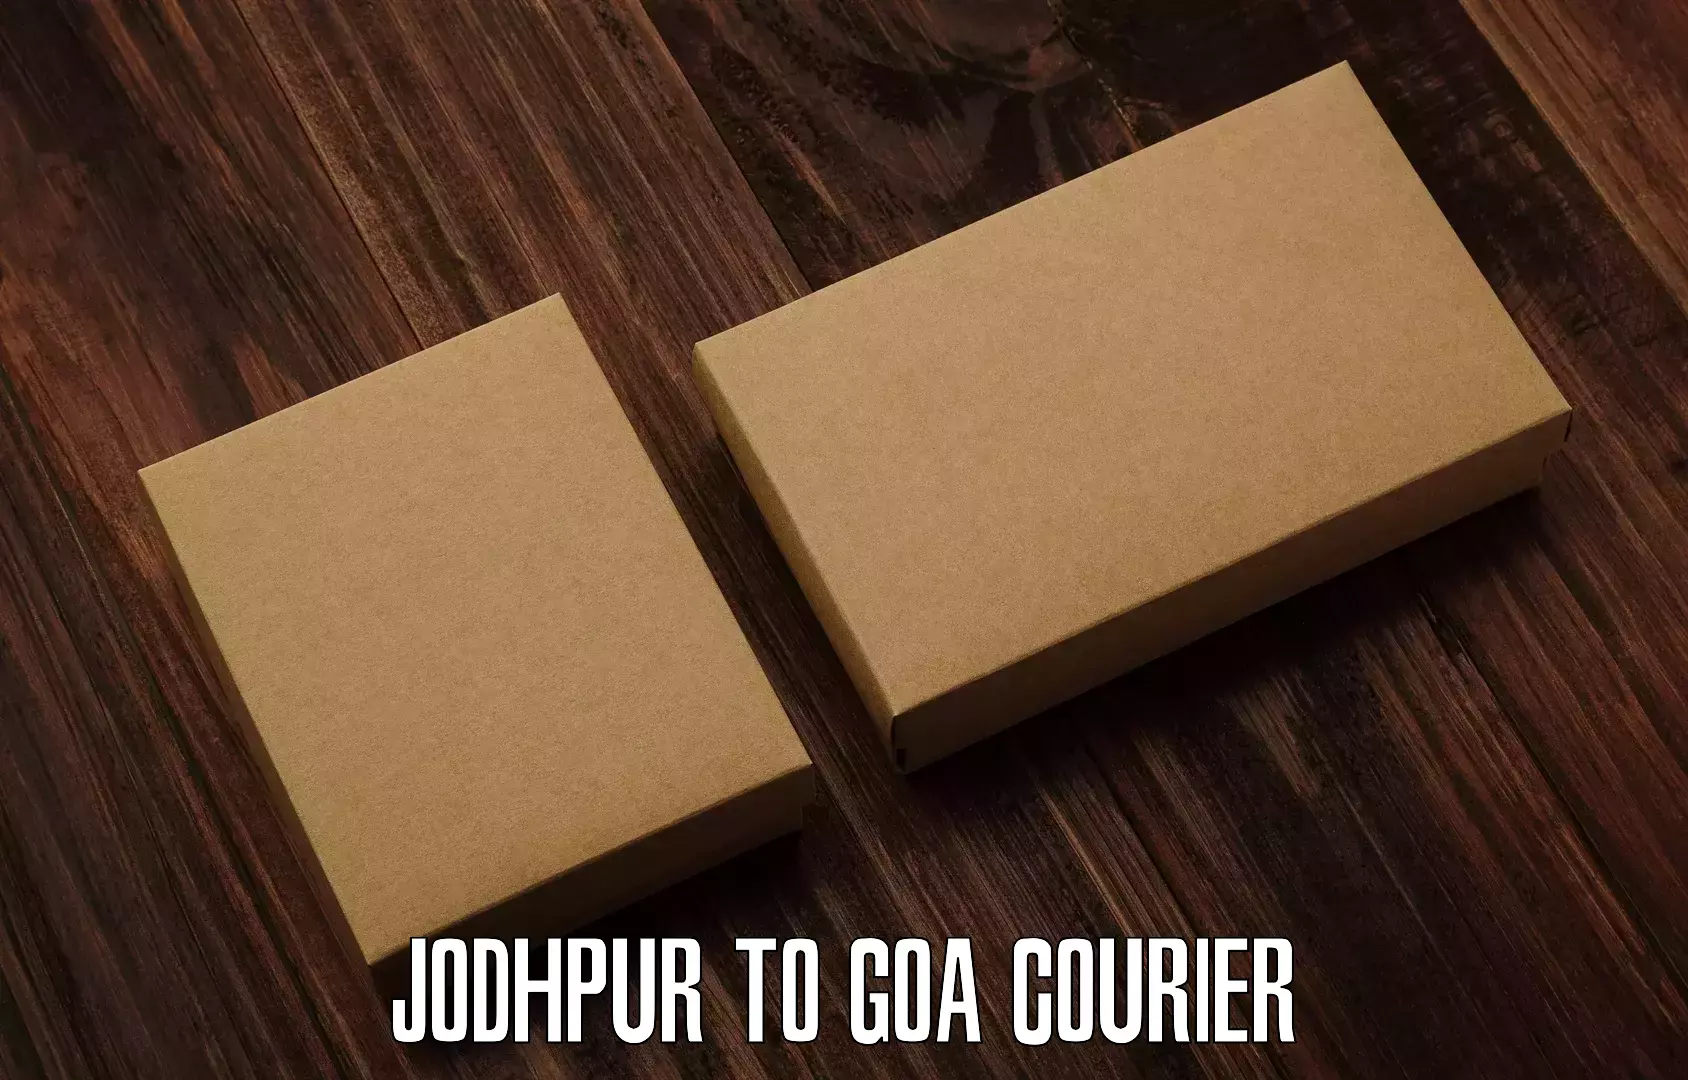 Advanced package delivery Jodhpur to Mormugao Port